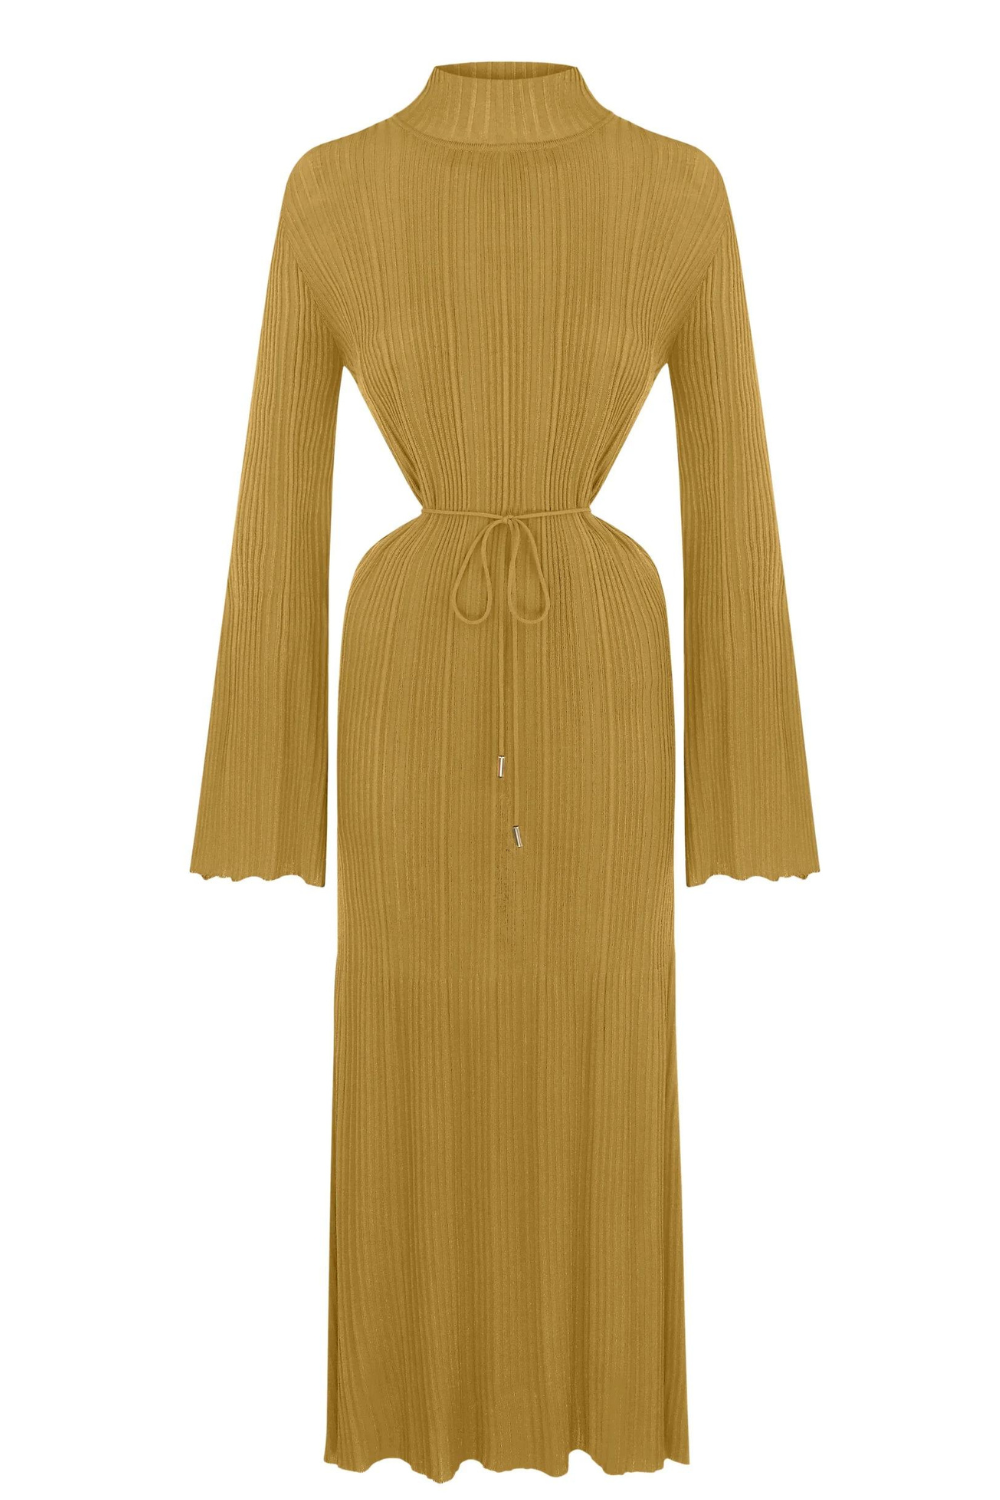 Трикотажна сукня гірчичного кольору з вирізами на талії (K.KVIT, T.MOSCA) PDJ23-07